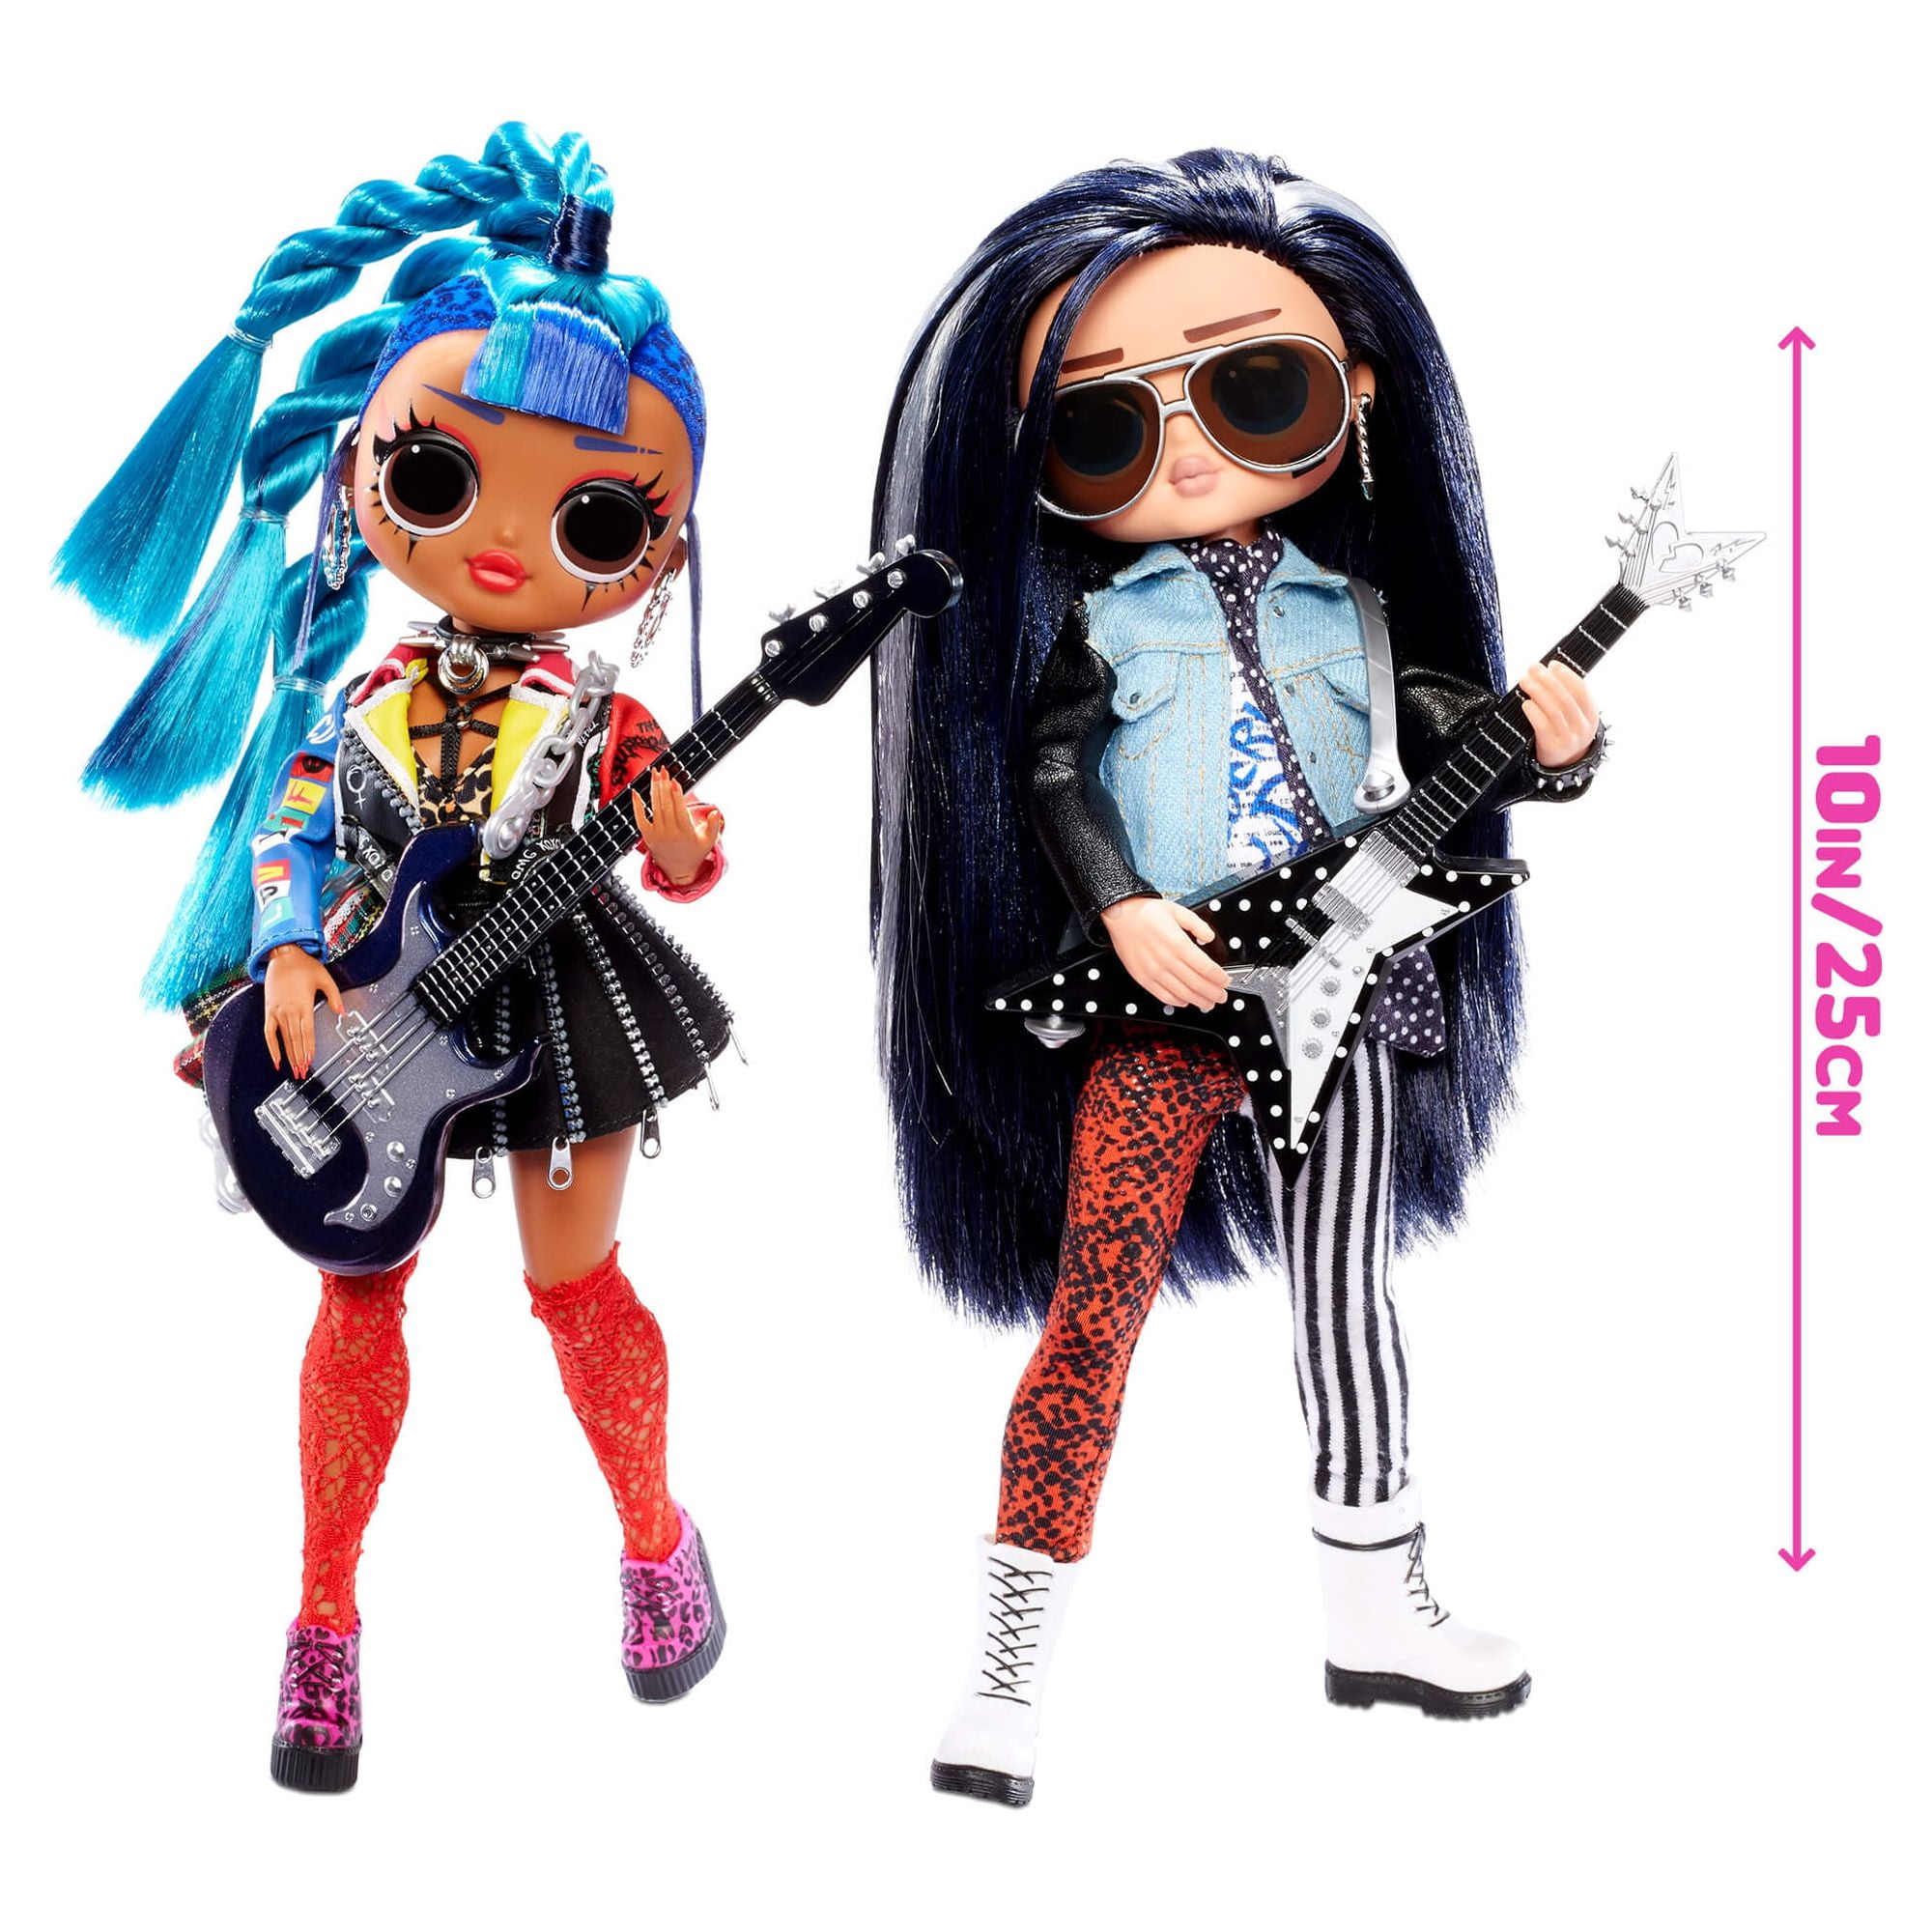 Rocker Outfits For Women 2021  Rocker outfits for women, Rocker outfit,  Rocker girl outfits